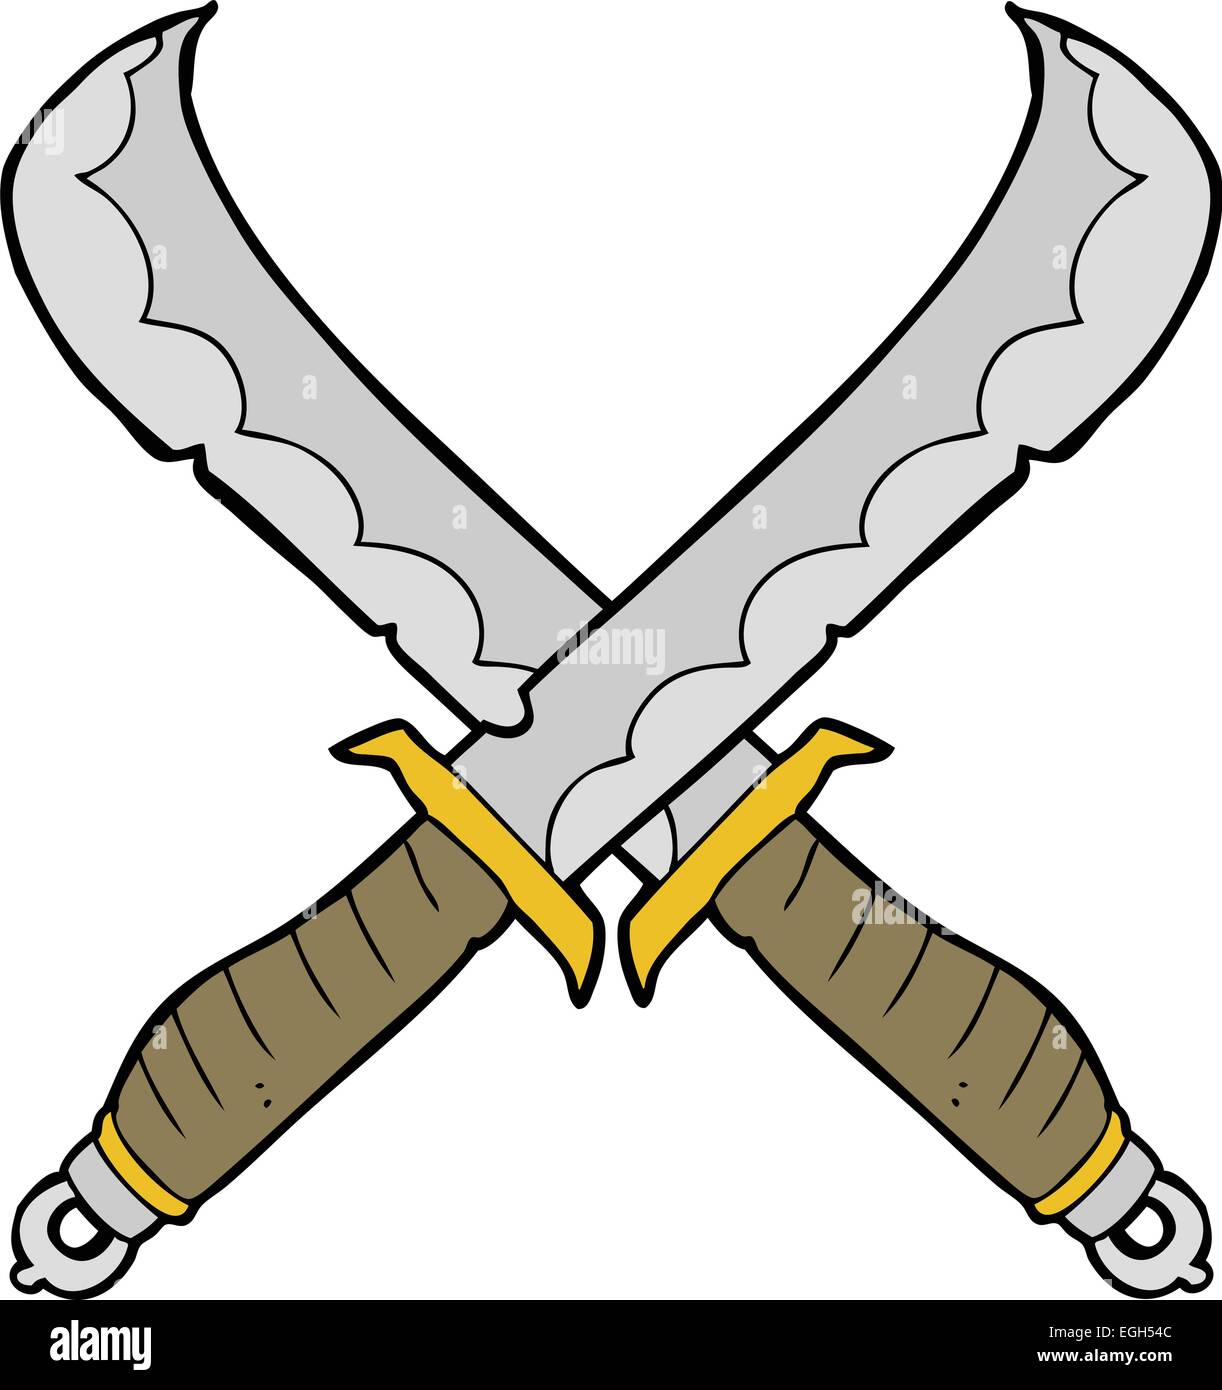 cartoon crossed swords Stock Vector Image & Art - Alamy